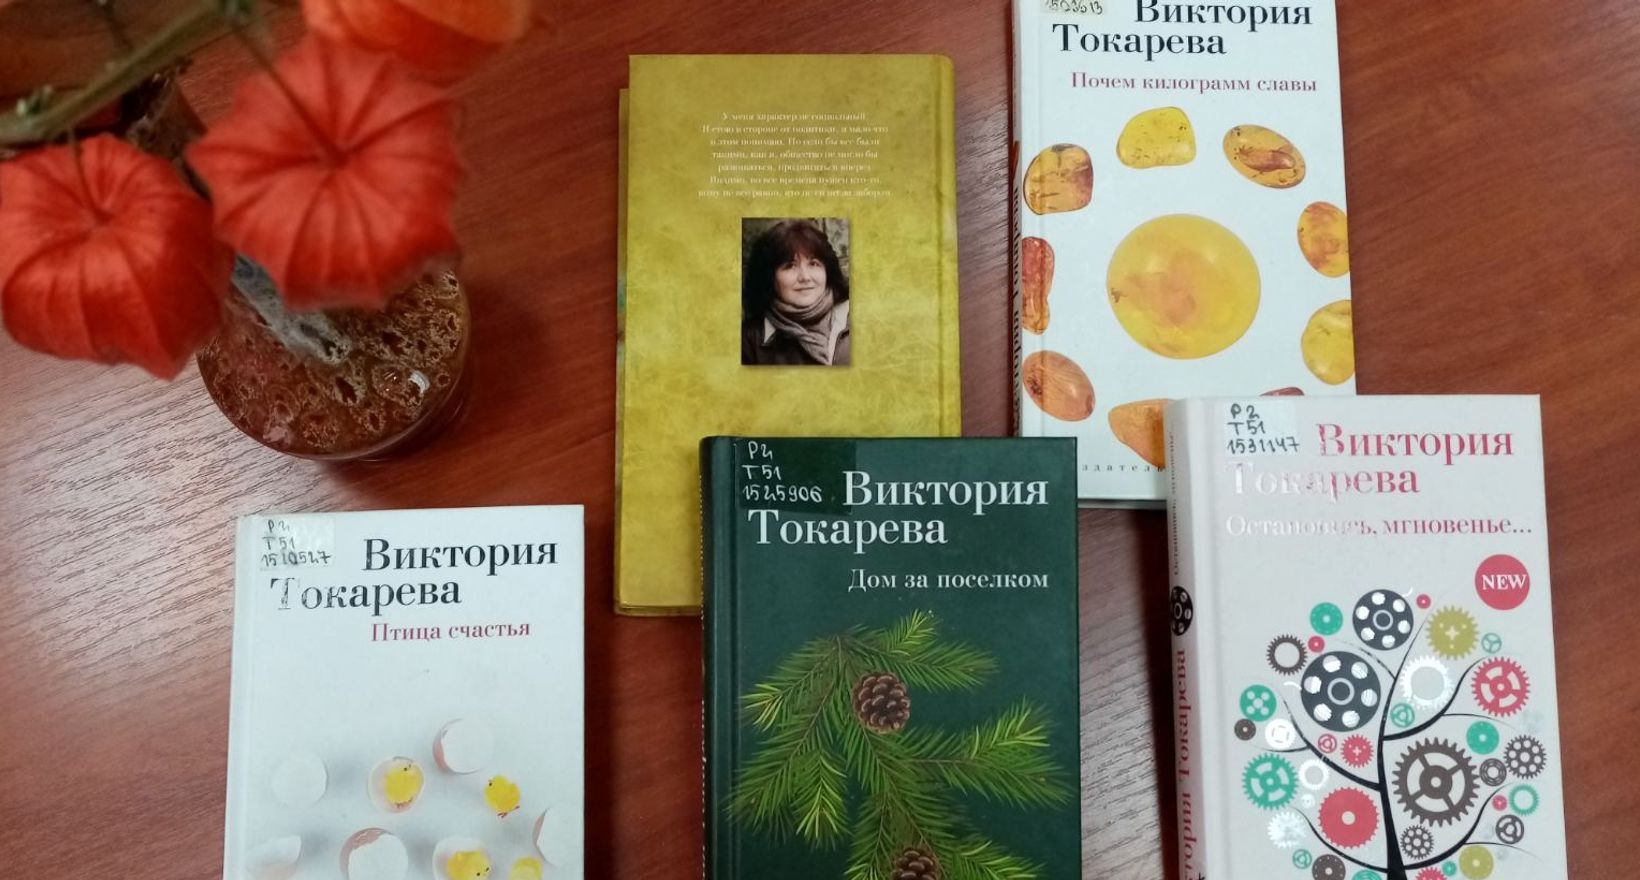 Виктория Токарева сценарист